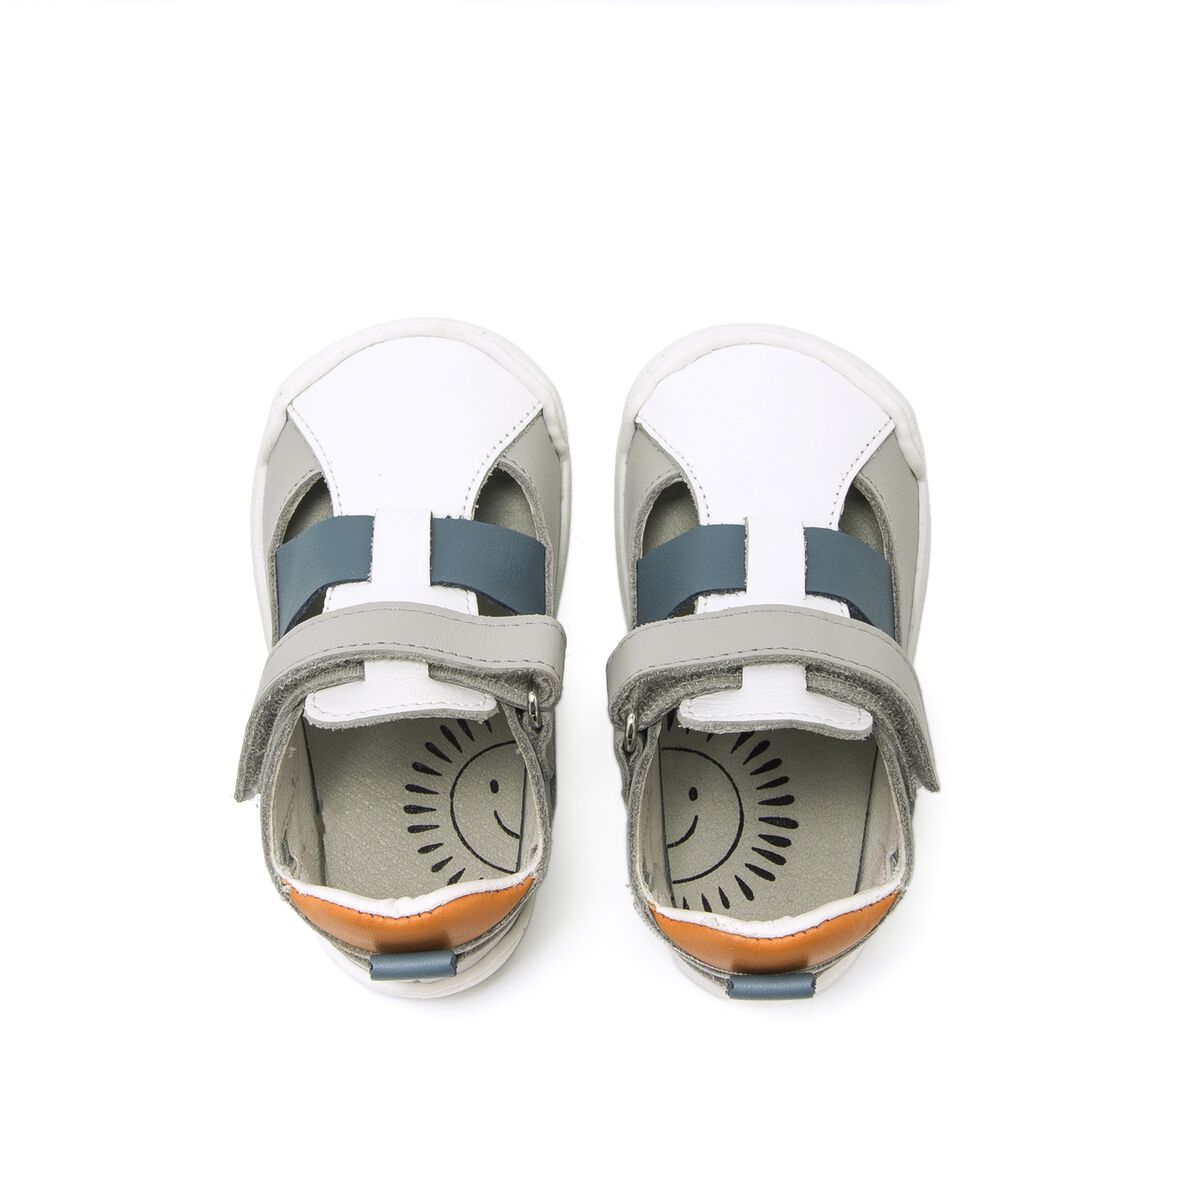 Sandalias de Nino modelo FREE BABY de MTNG image number 5